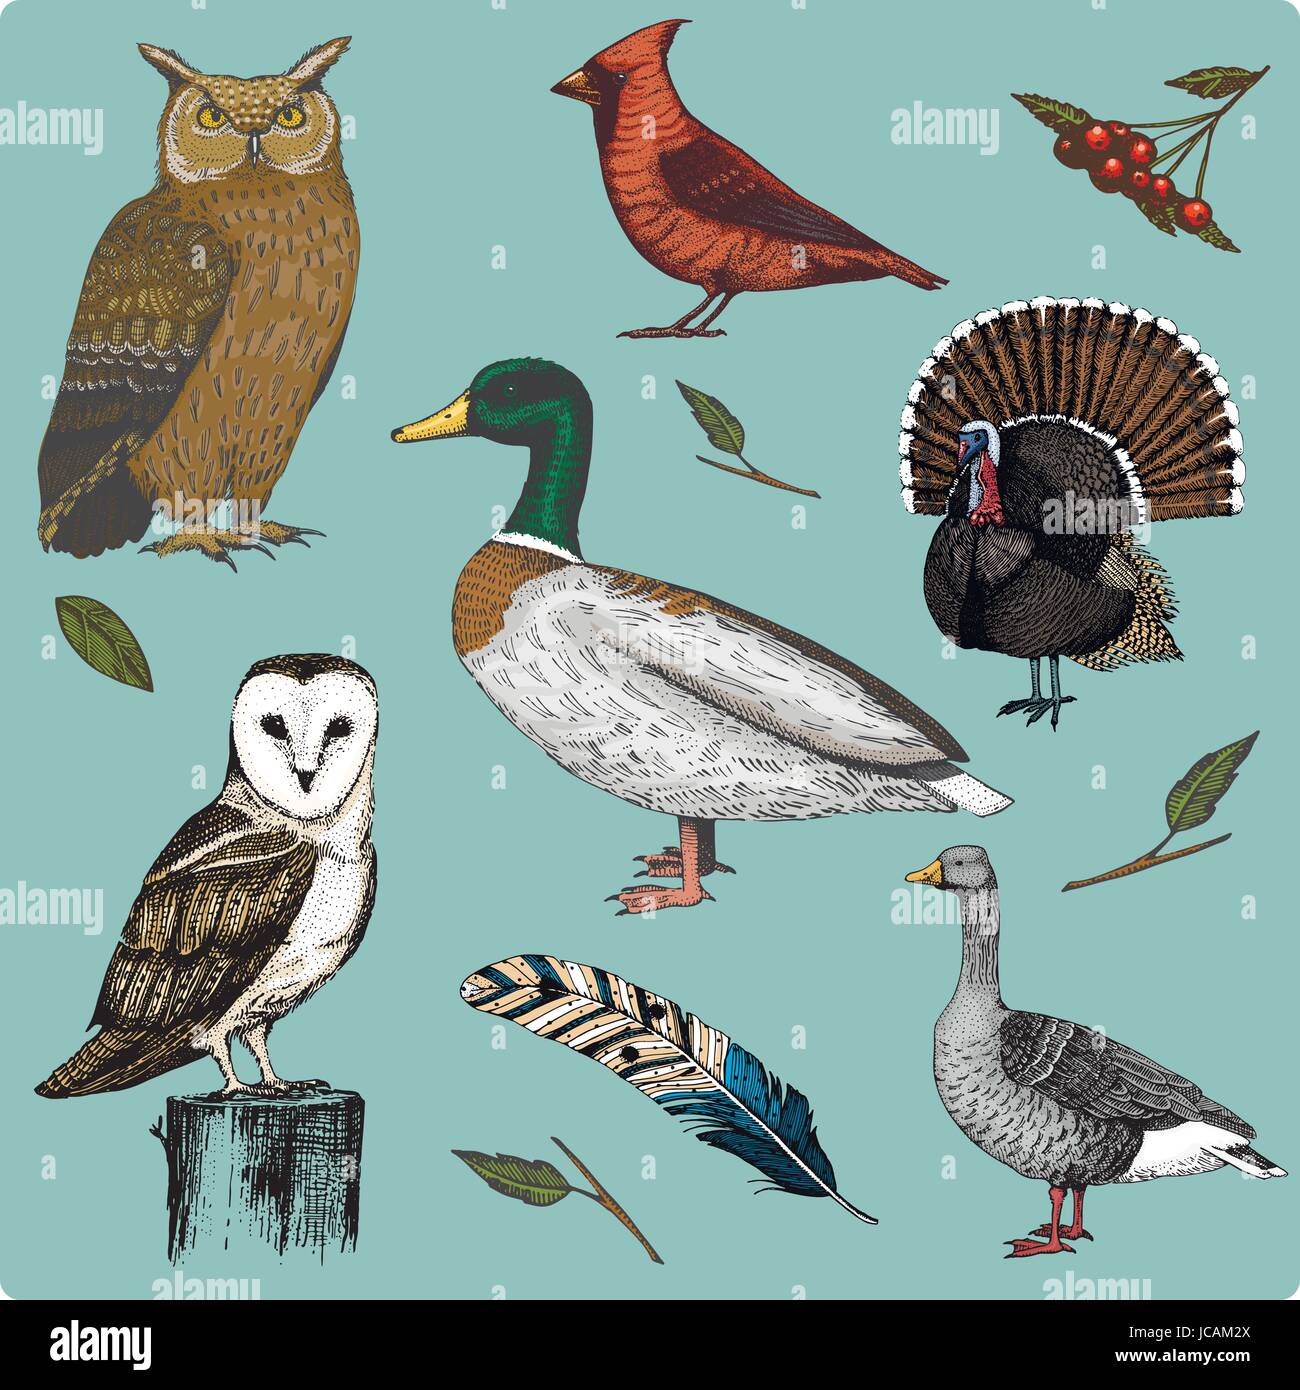 19 bird drawings by conbatiente | Image